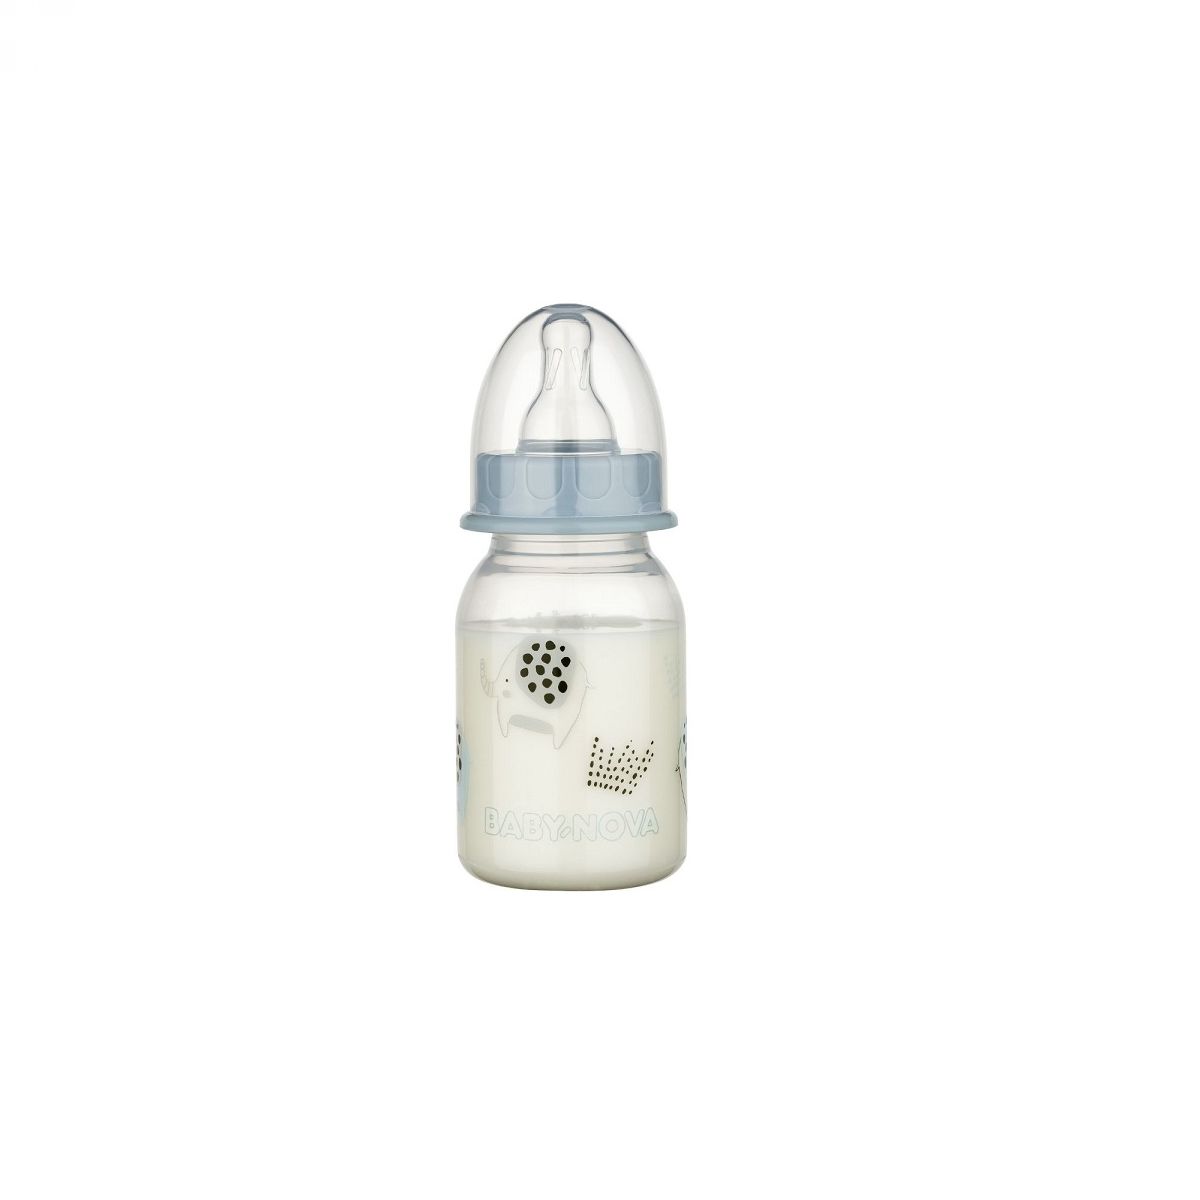 BABY-NOVA PP steklenička 120 ml v treh motivih - zajca, ribe in slona